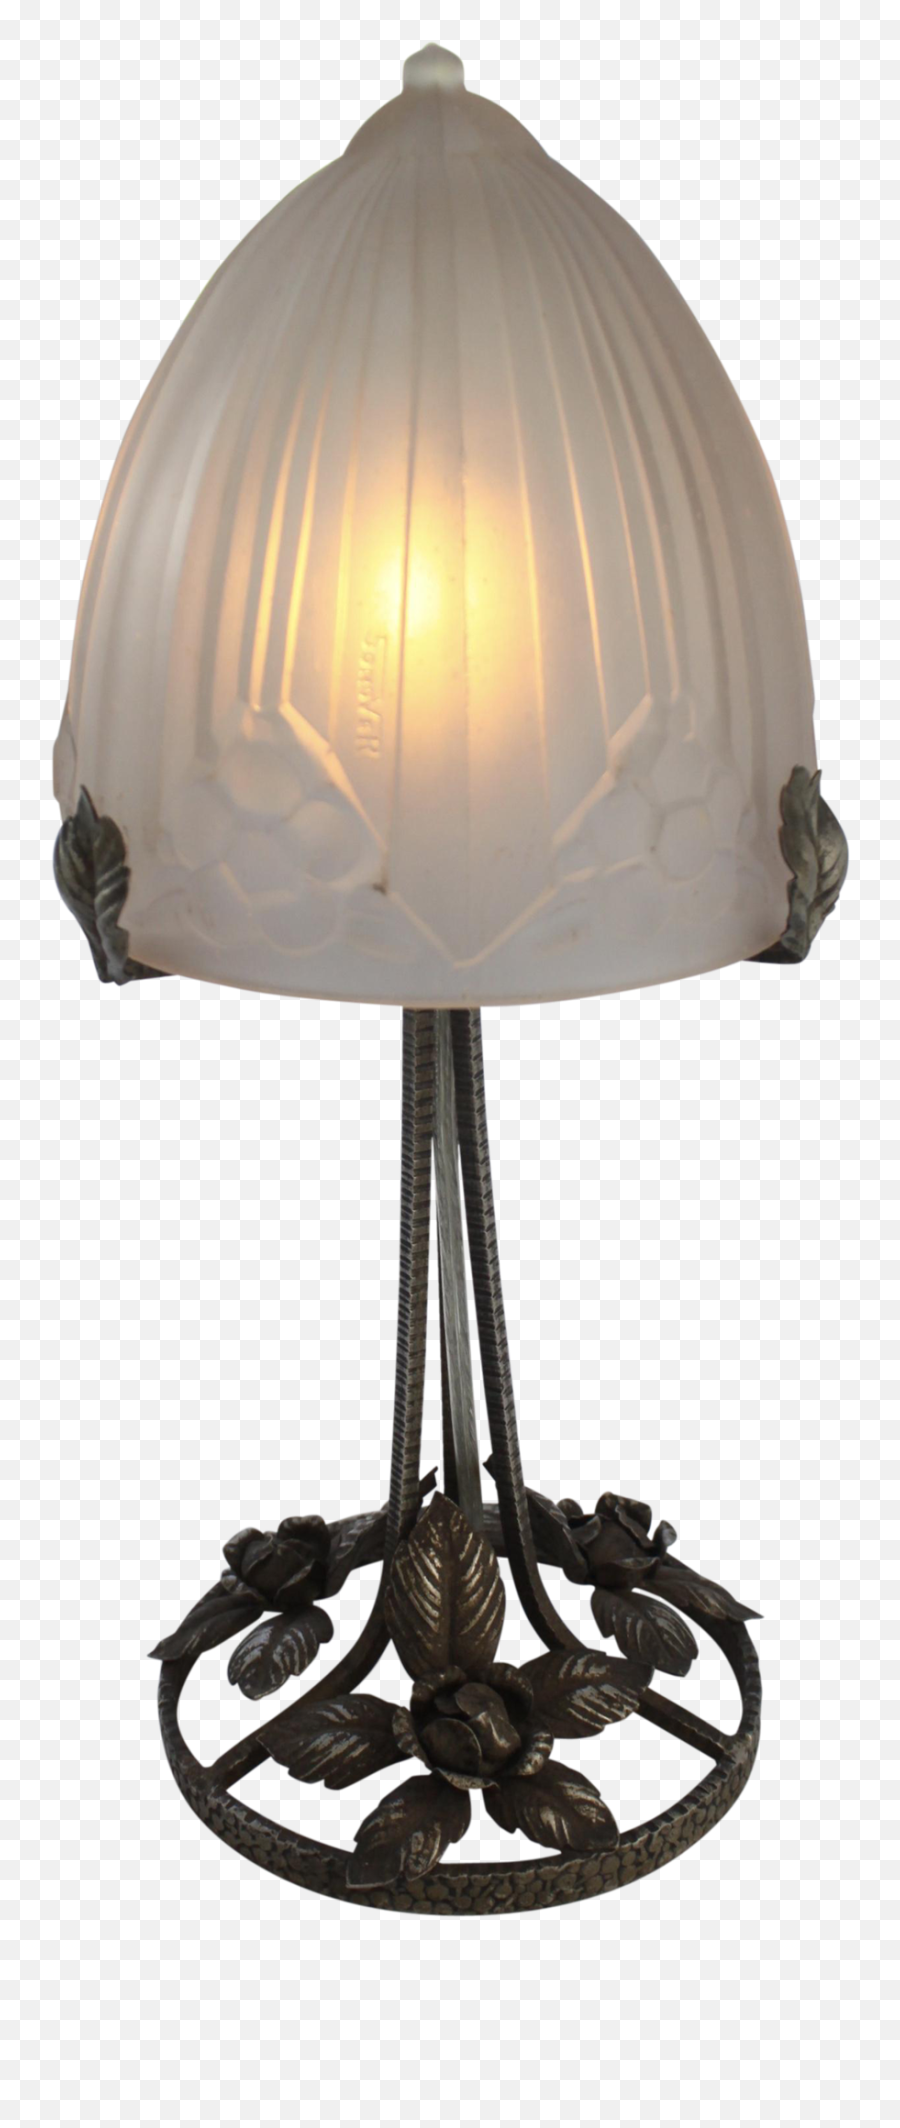 Download Hd 44 Elegant Art Deco Desk Lamp Pics - Light Desk Lamp Png,Light Fixture Png